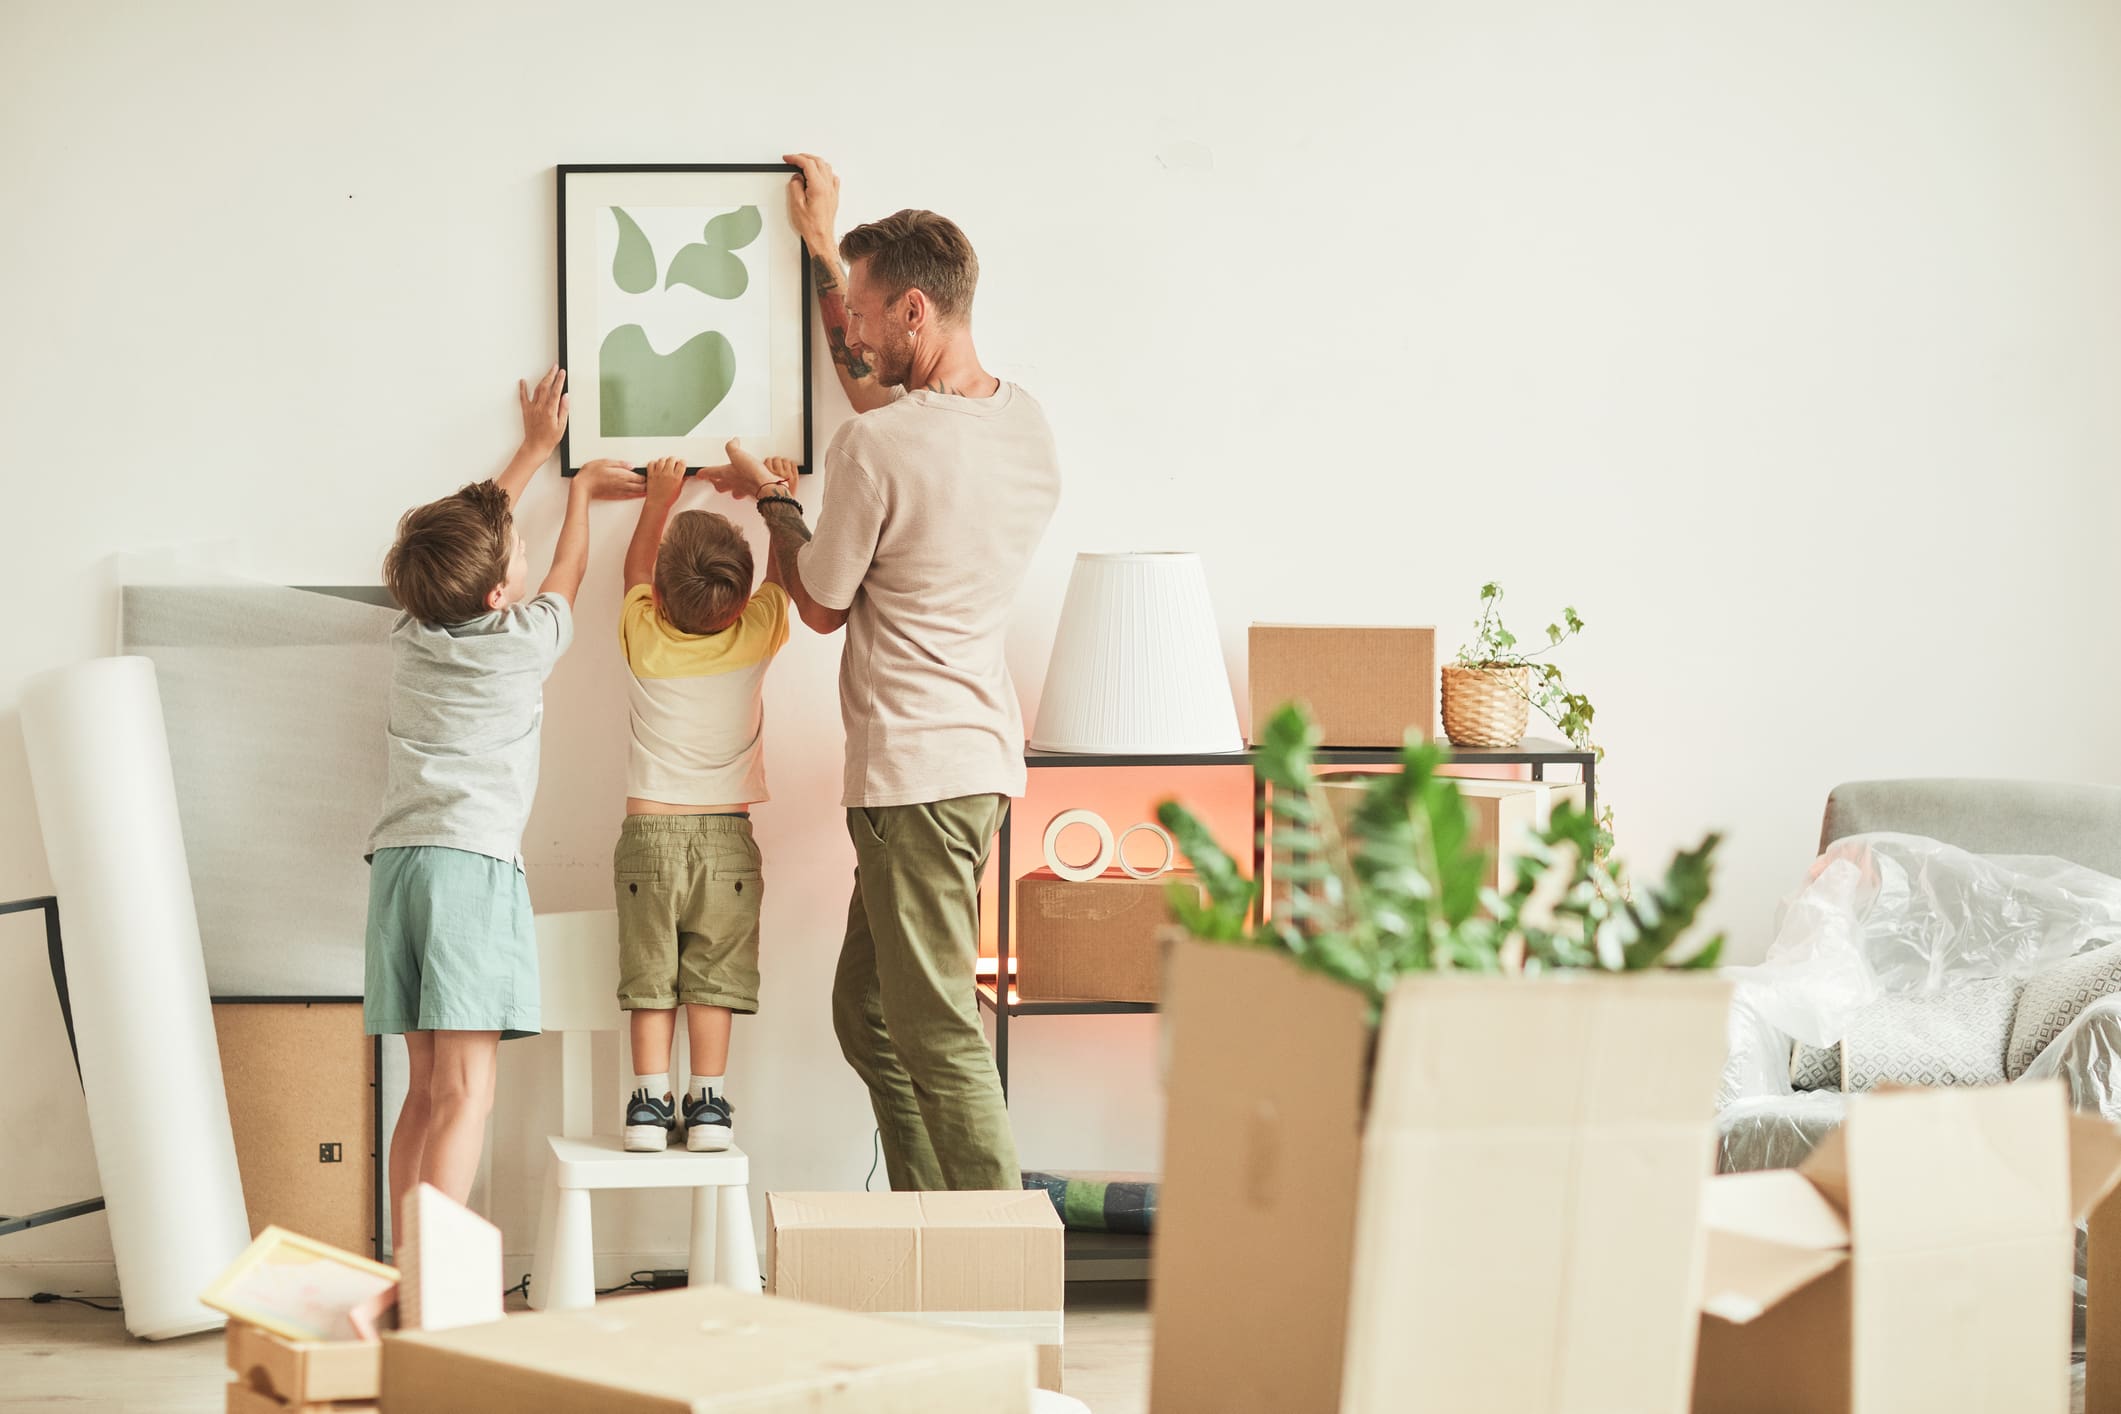 Apa gyermekeivel egy képet tesznek fel a falra az új lakásban.